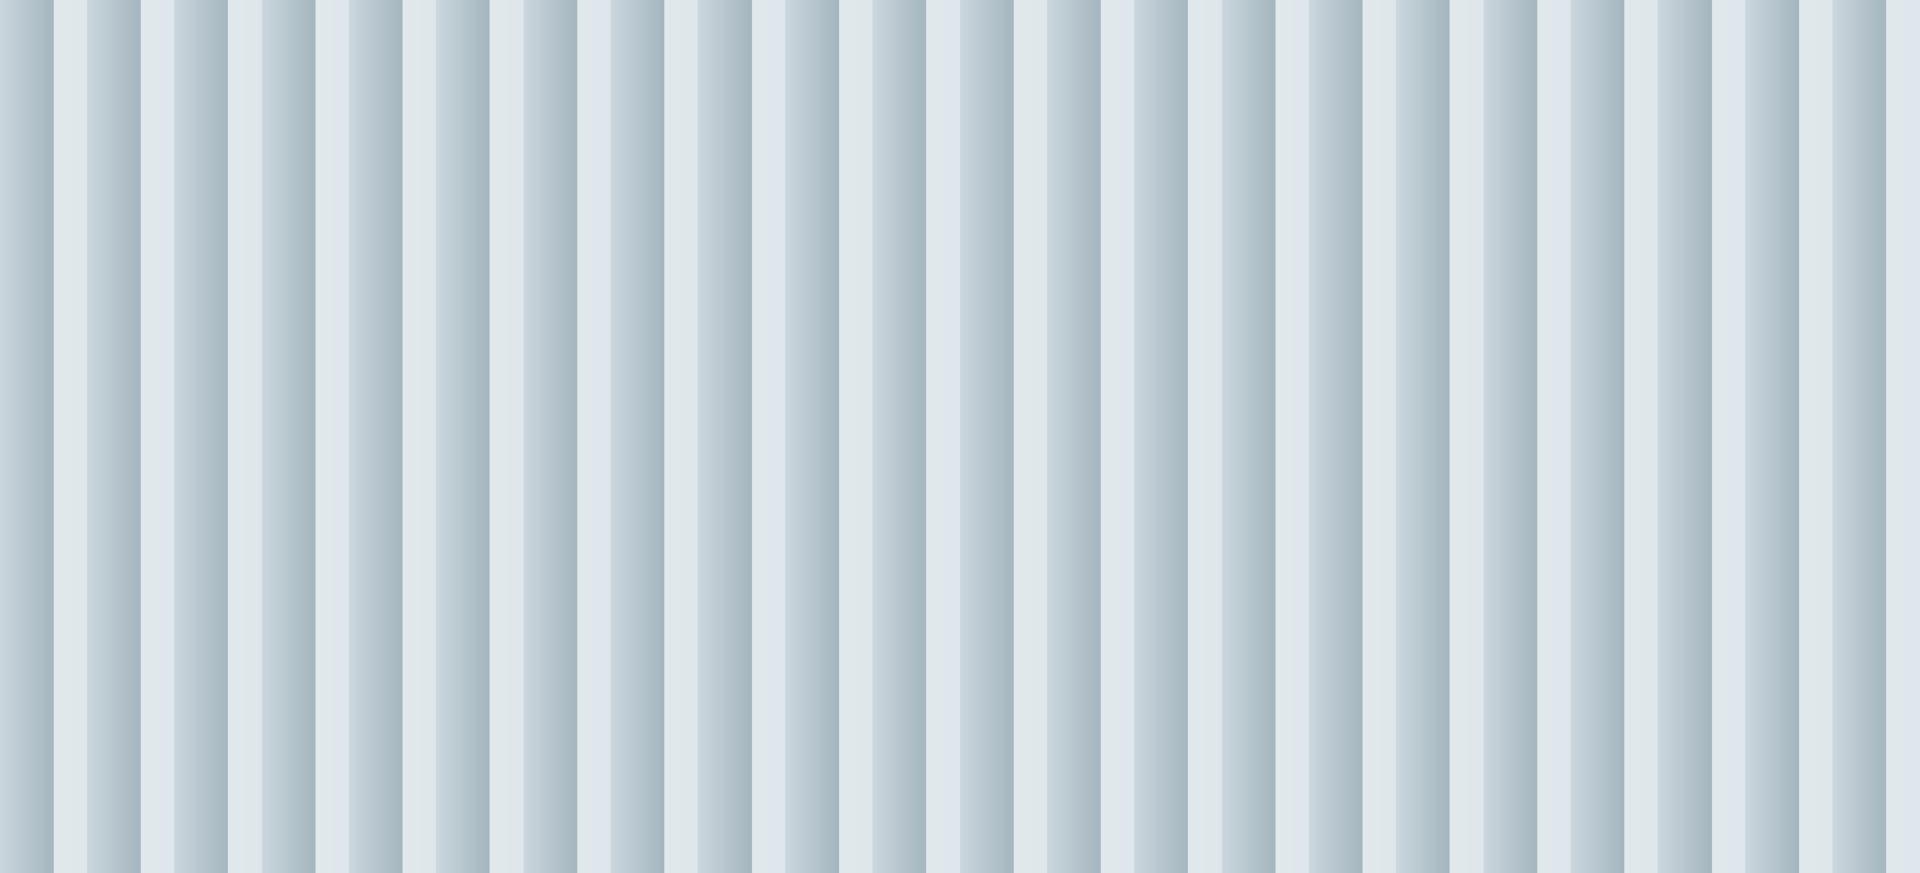 blanc et bleu clair dégradé vertical ligne audacieuse sans soudure de fond et de texture vecteur